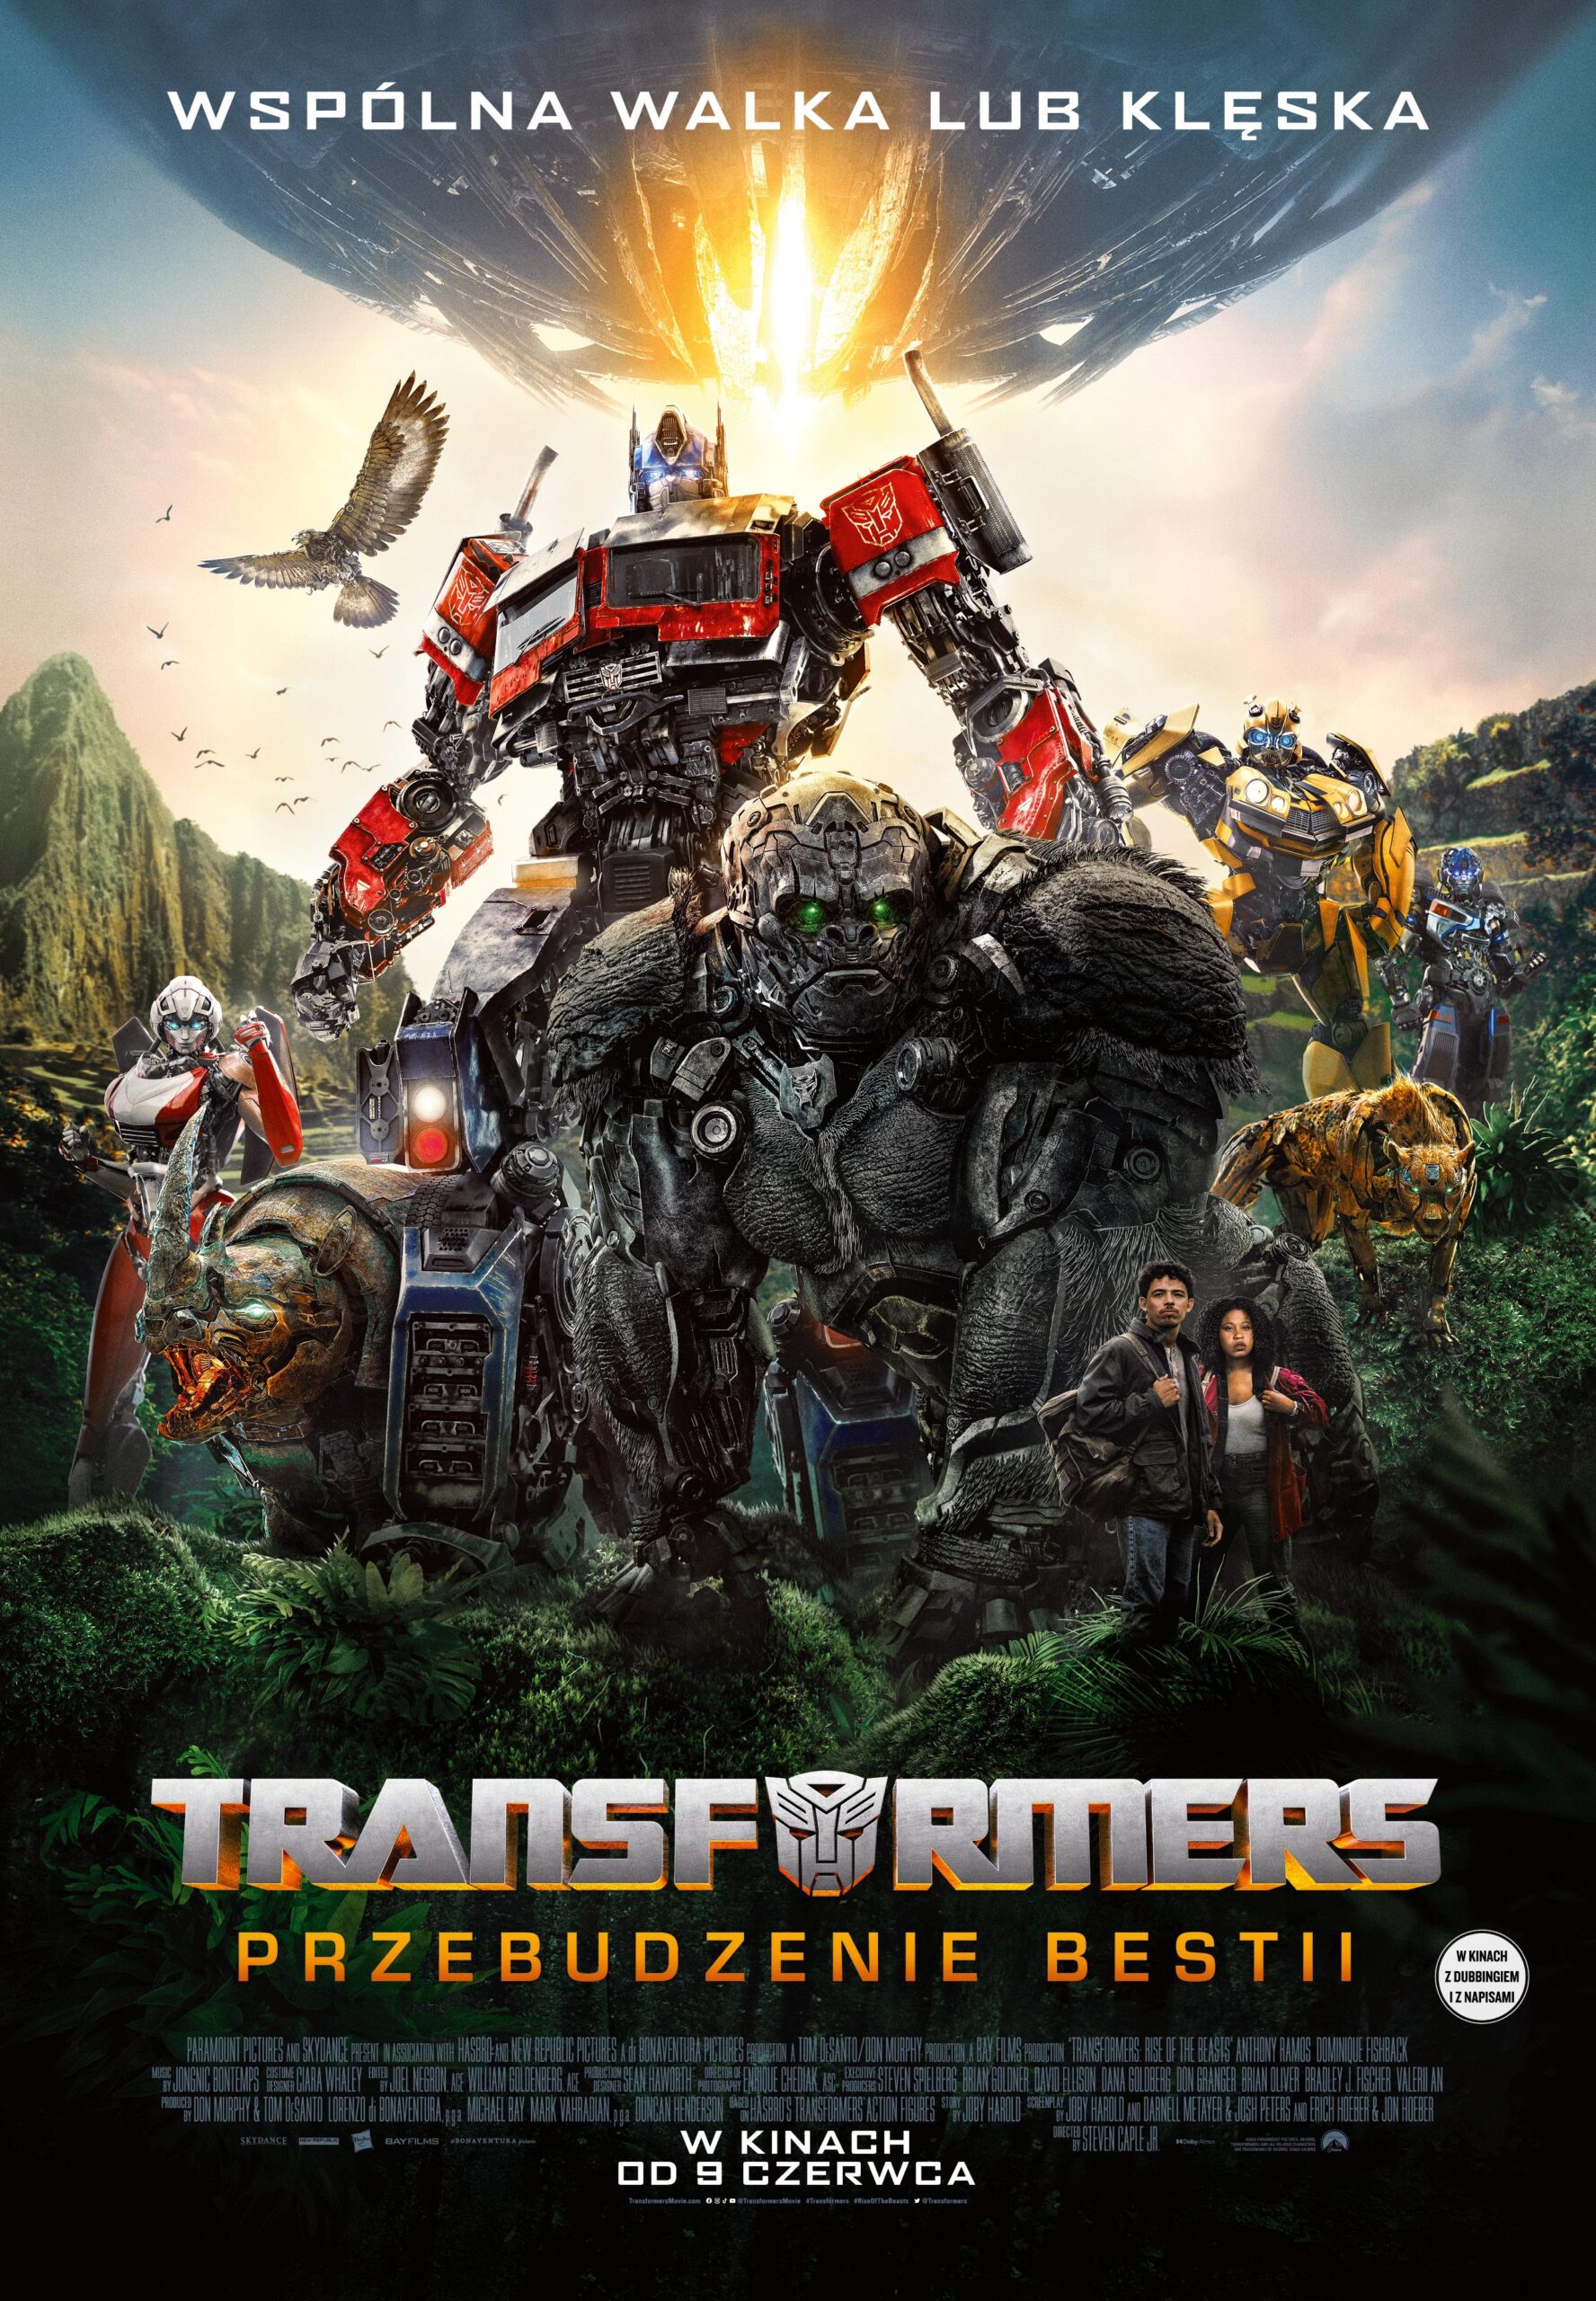 Transformers: Przebudzenie bestii – 2D dubbing / PREMIERA OGÓLNOPOLSKA